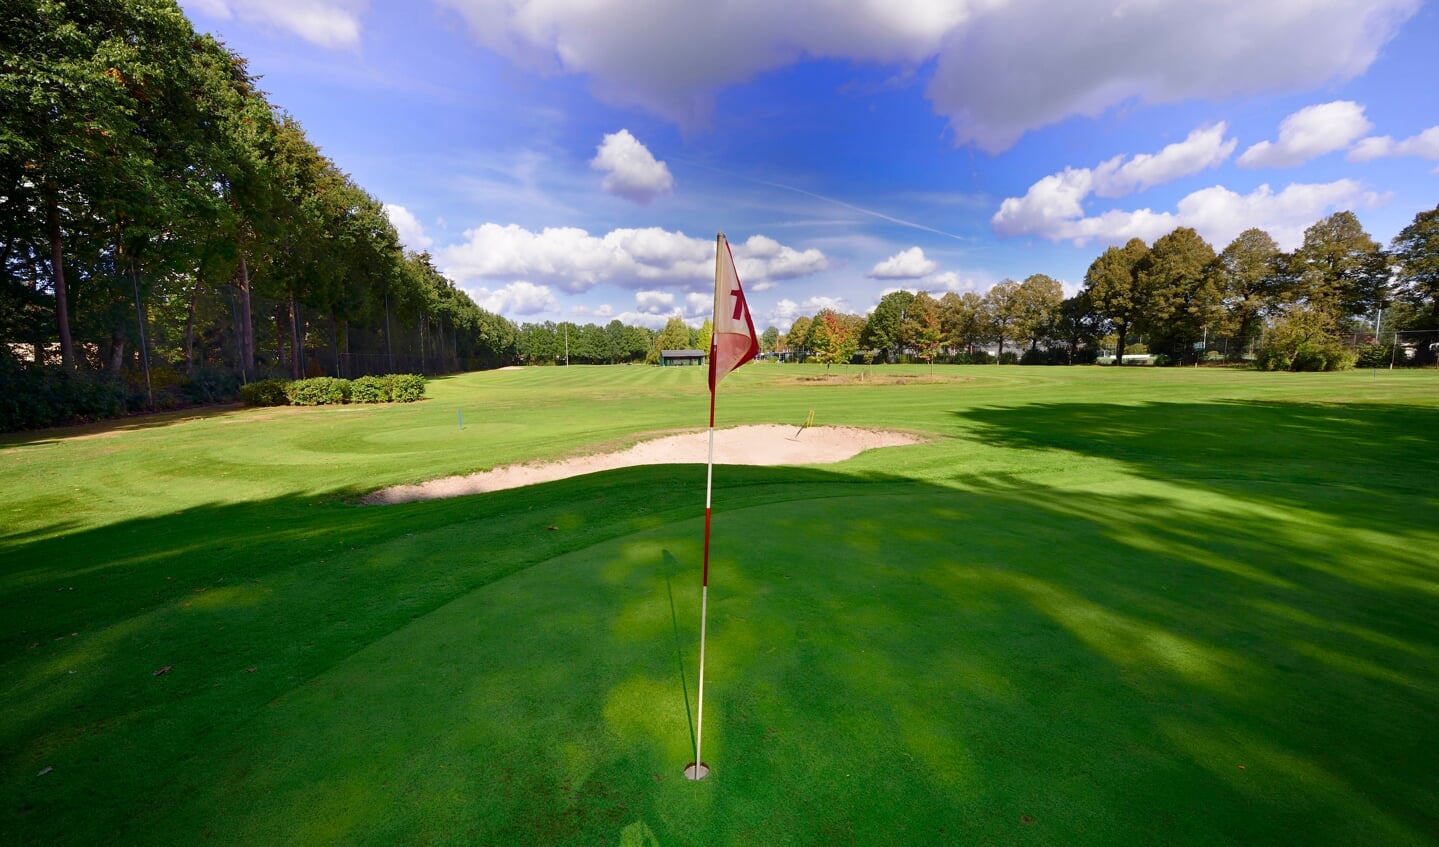 zaterdag 3 september opent Golfclub Son haar deuren voor iedereen die kennis wil maken de golfsport.